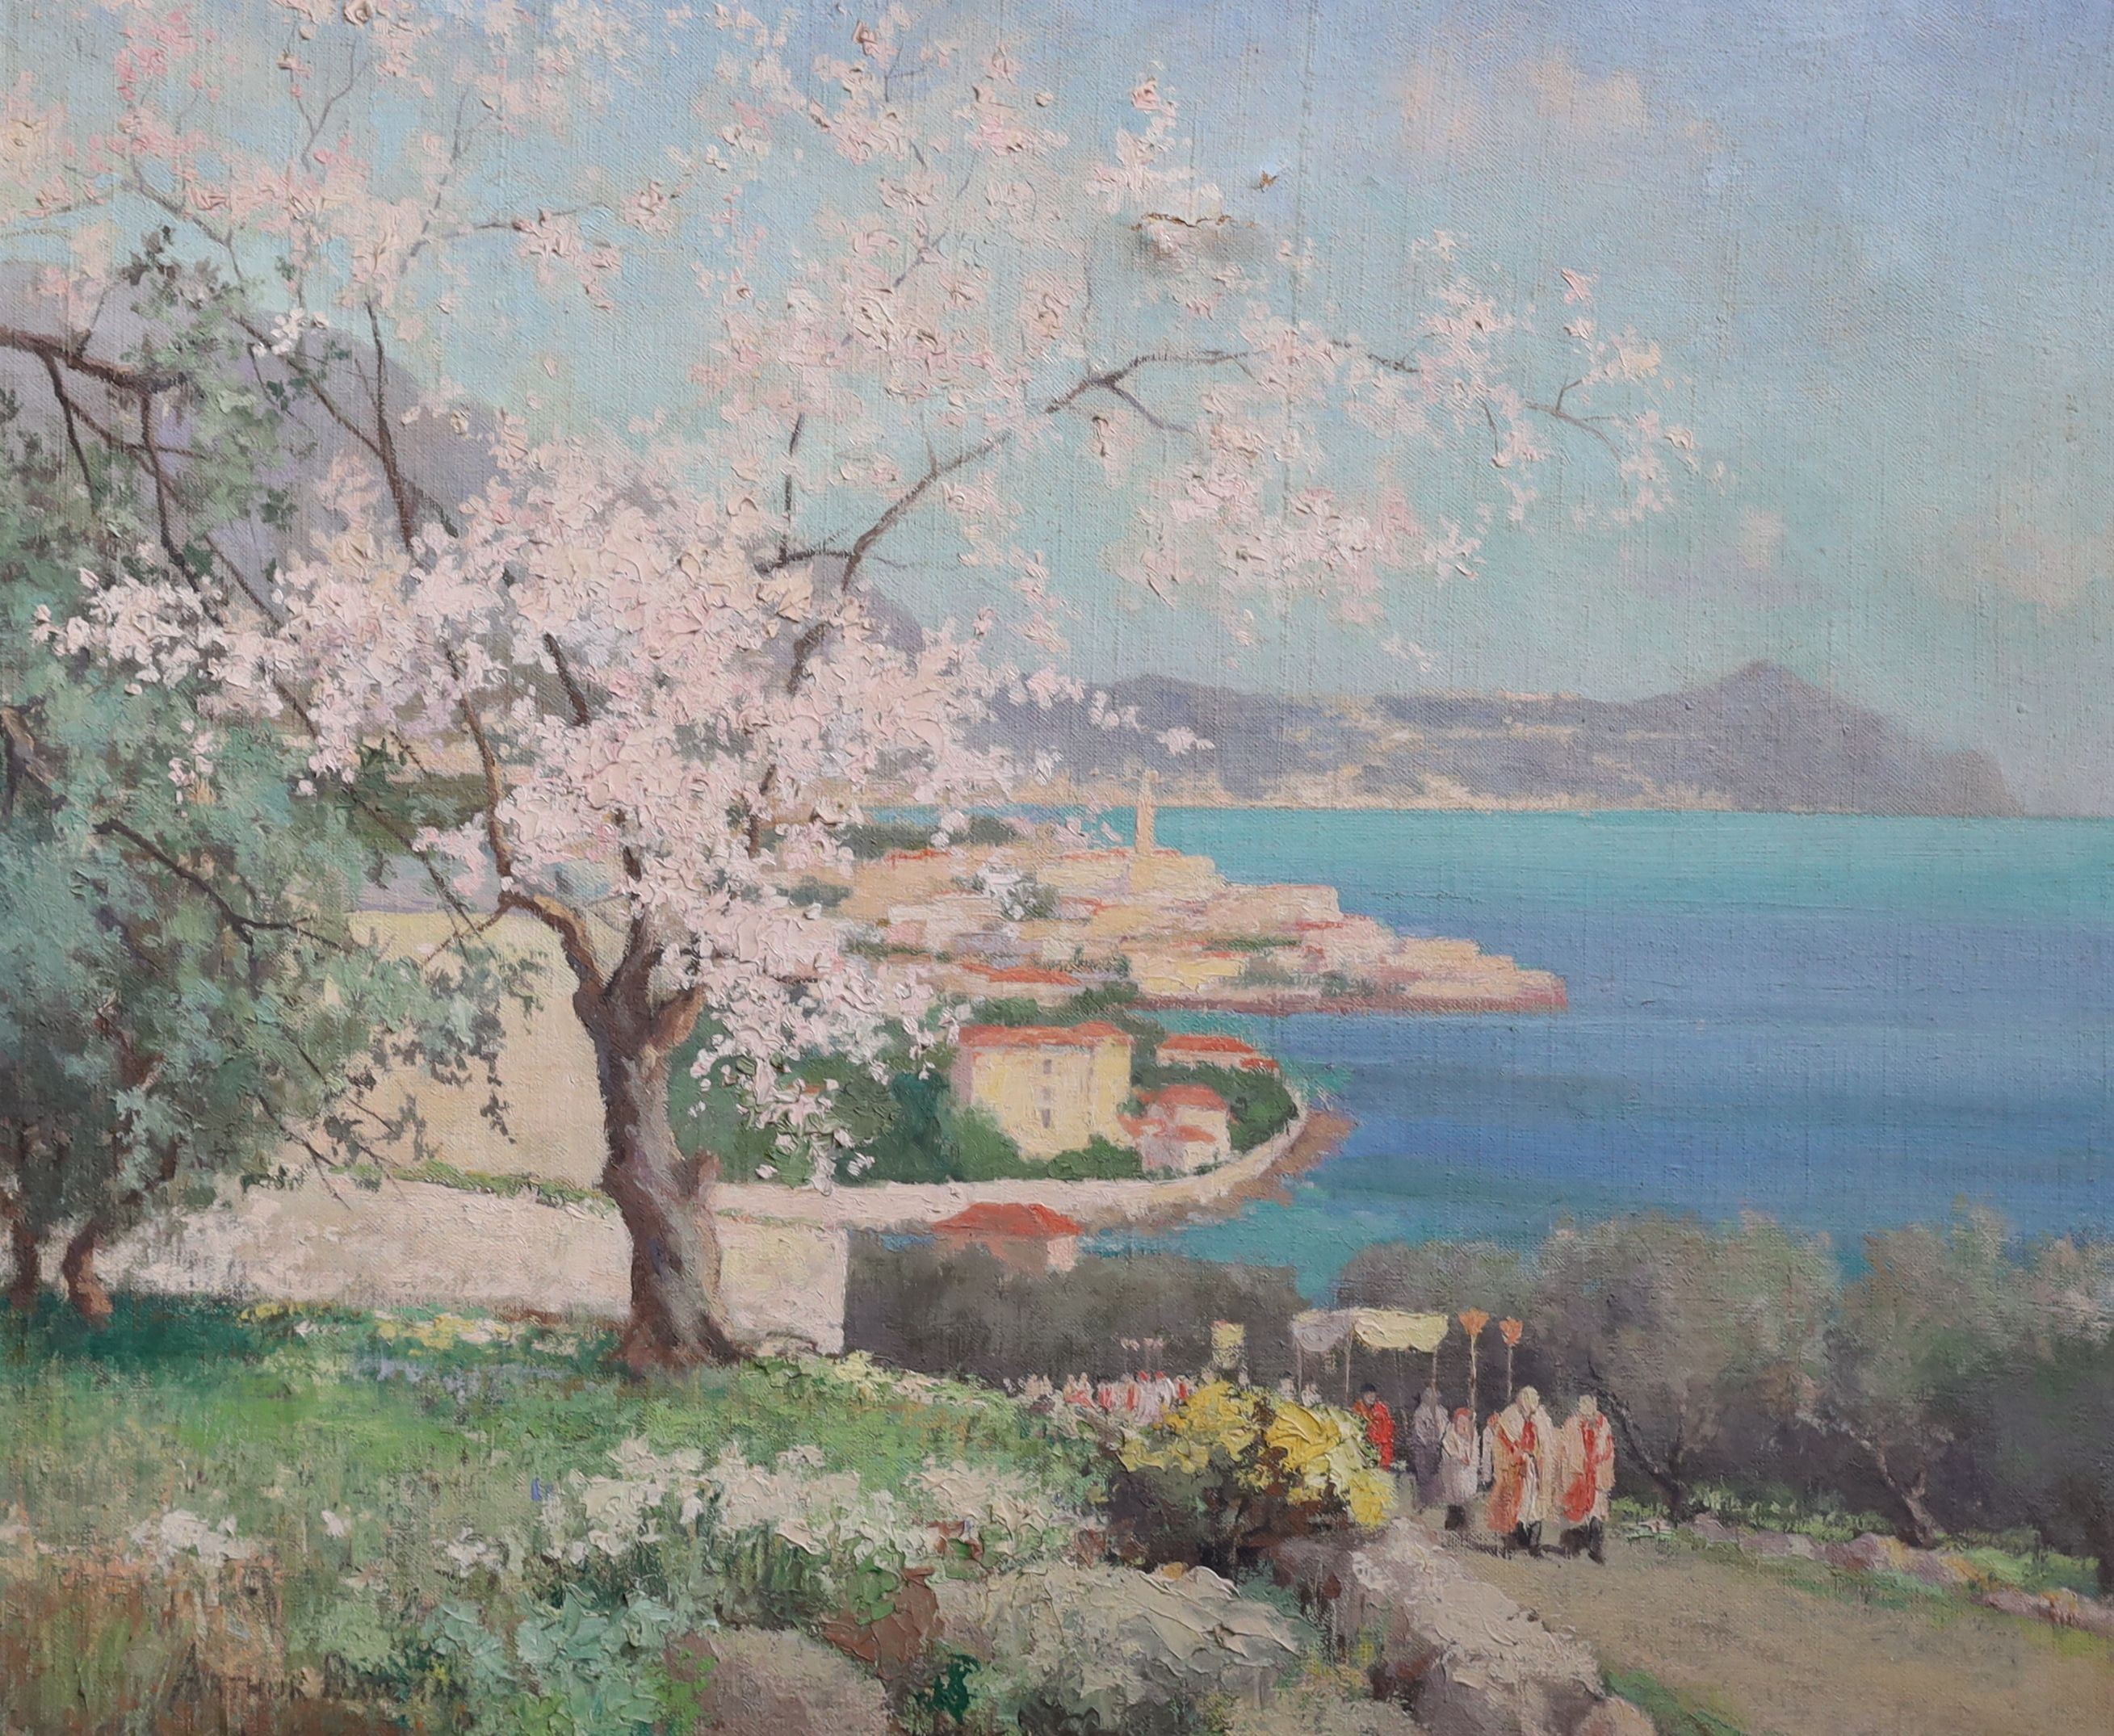 Arthur Bernard Bateman (1883-1970), A Spring Festival in Italy, oil on canvas, 62 x 75cm